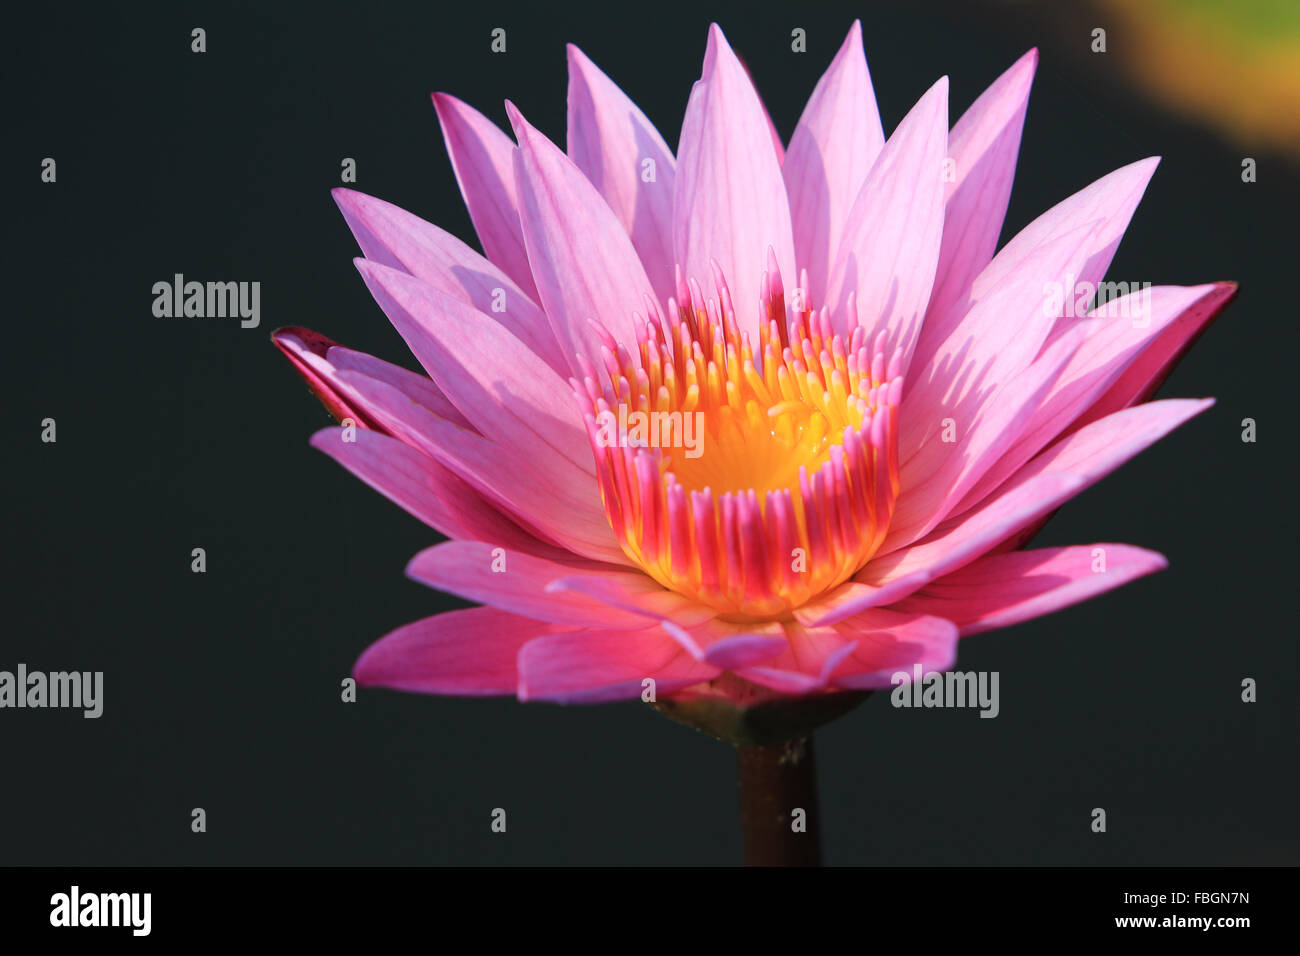 Fiore di loto rosa immagini e fotografie stock ad alta risoluzione - Alamy